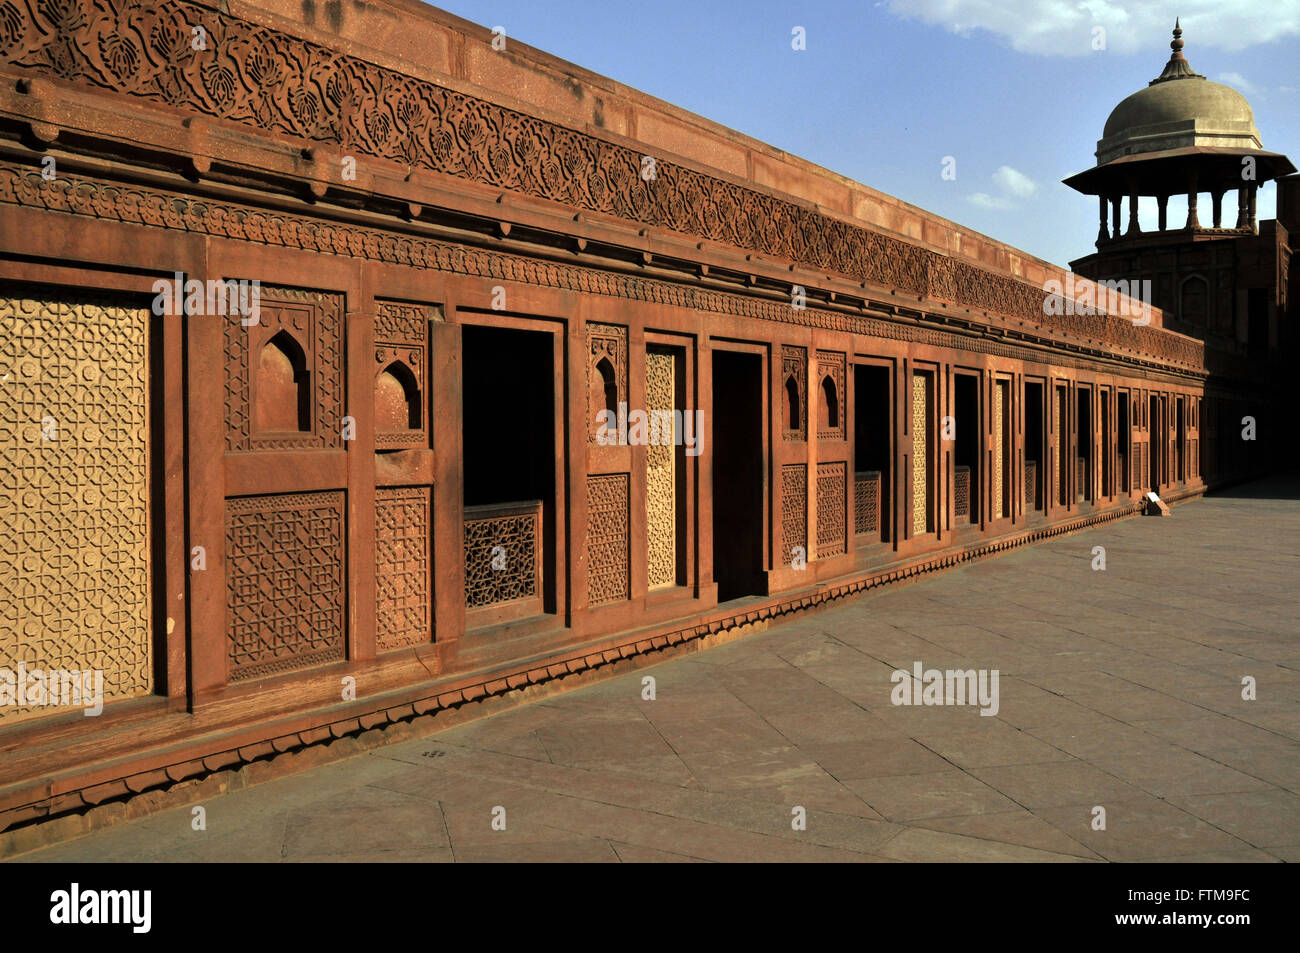 Dettaglio di Agra fort - palazzo di città fortificata Foto Stock